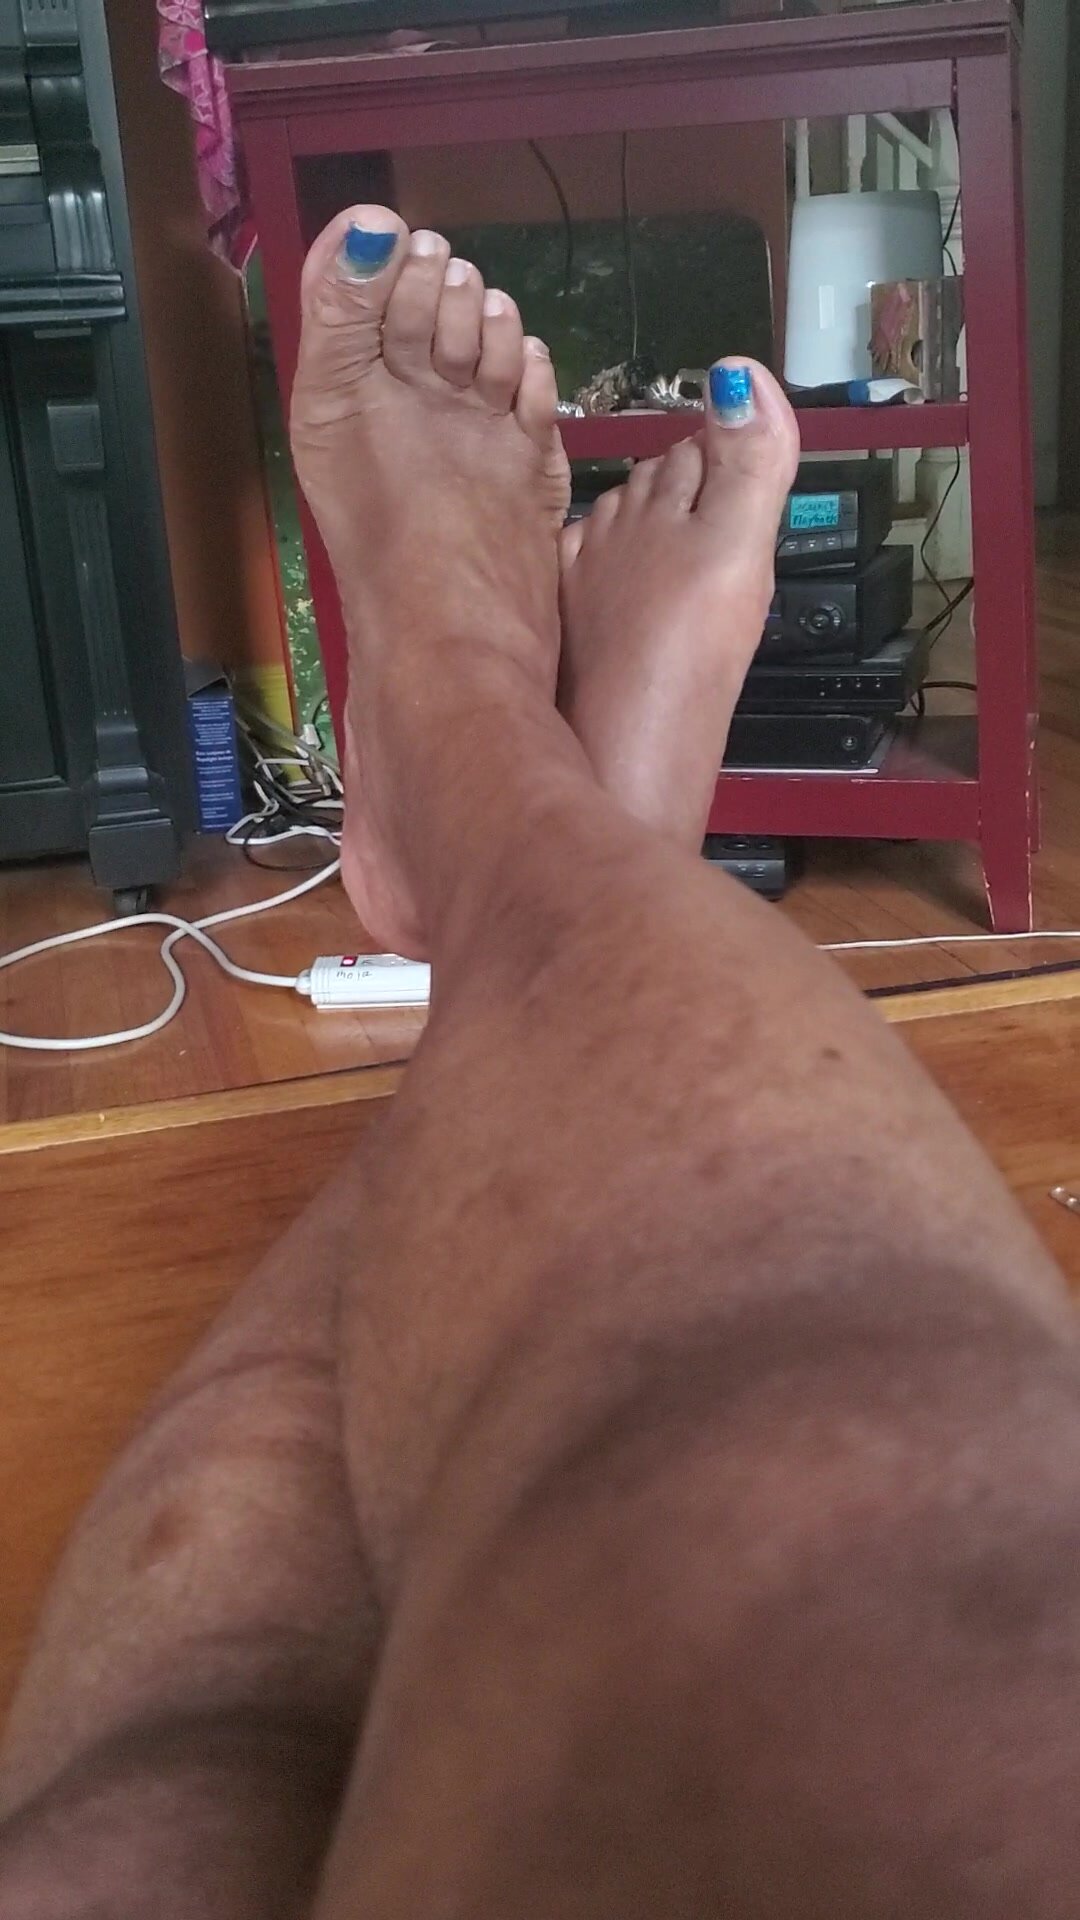 P.E.T.E.'s ticklish bare feet wiggling in anticipation